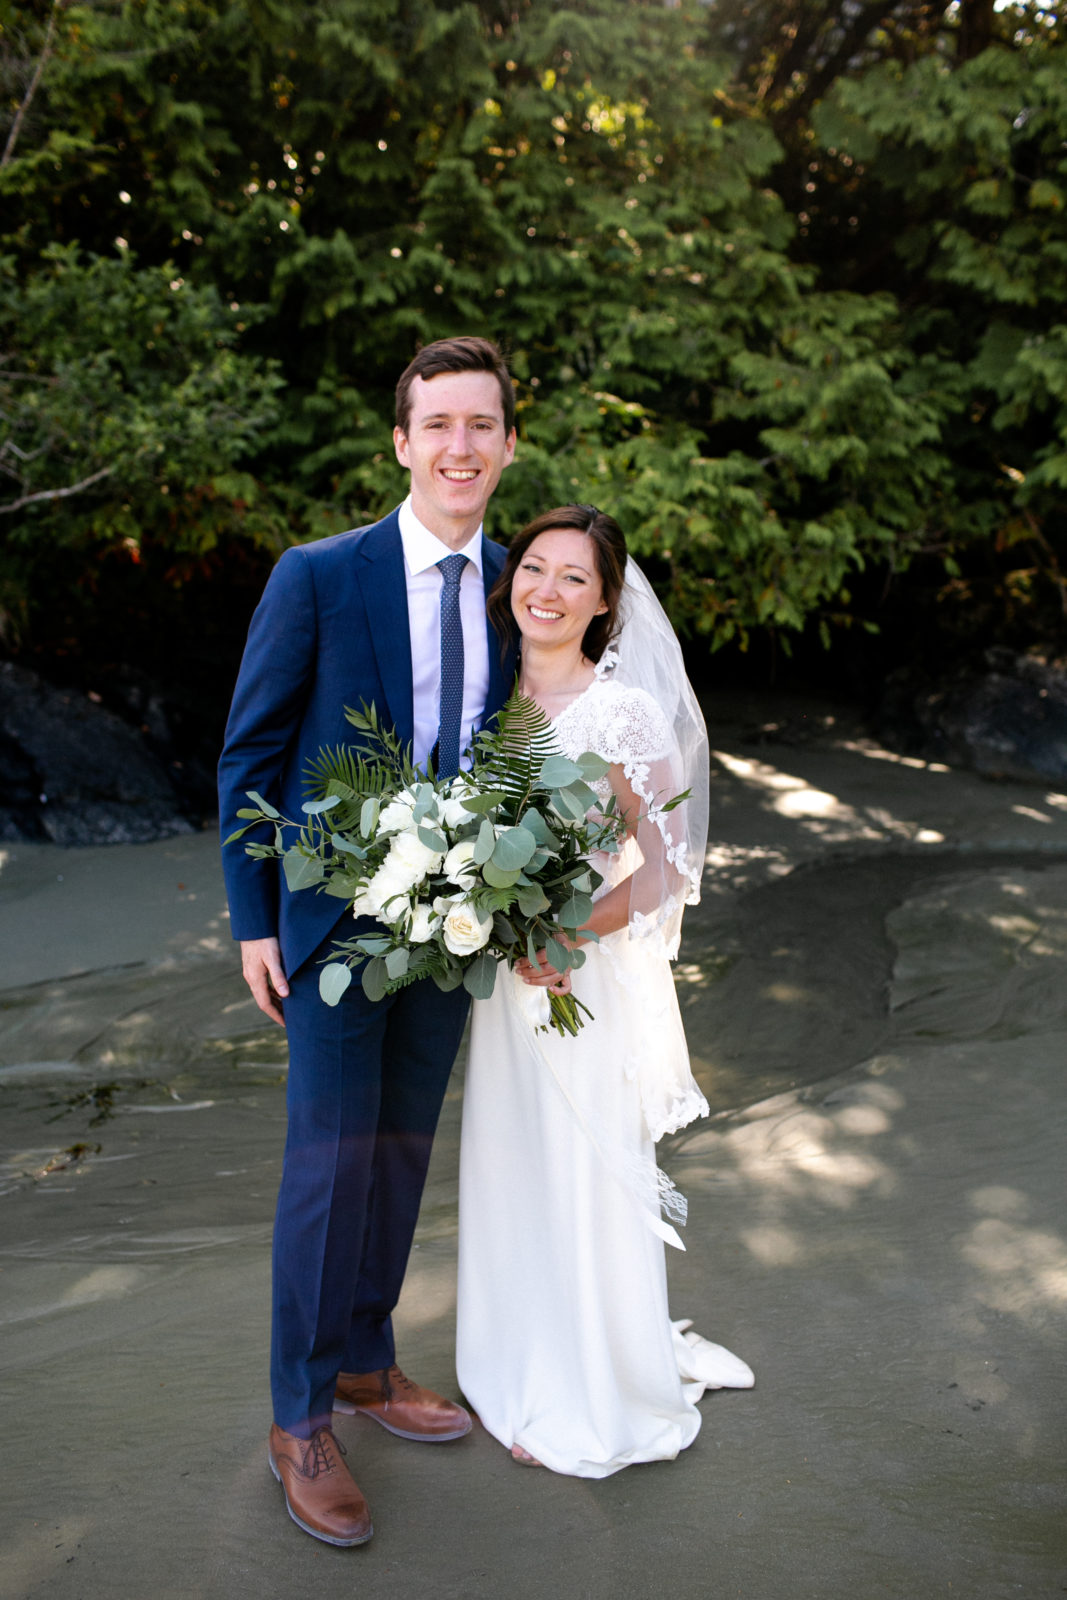 Wickanninish Wedding Photographer, Tofino Wedding Photographer,
Vancouver Island Wedding Photographer